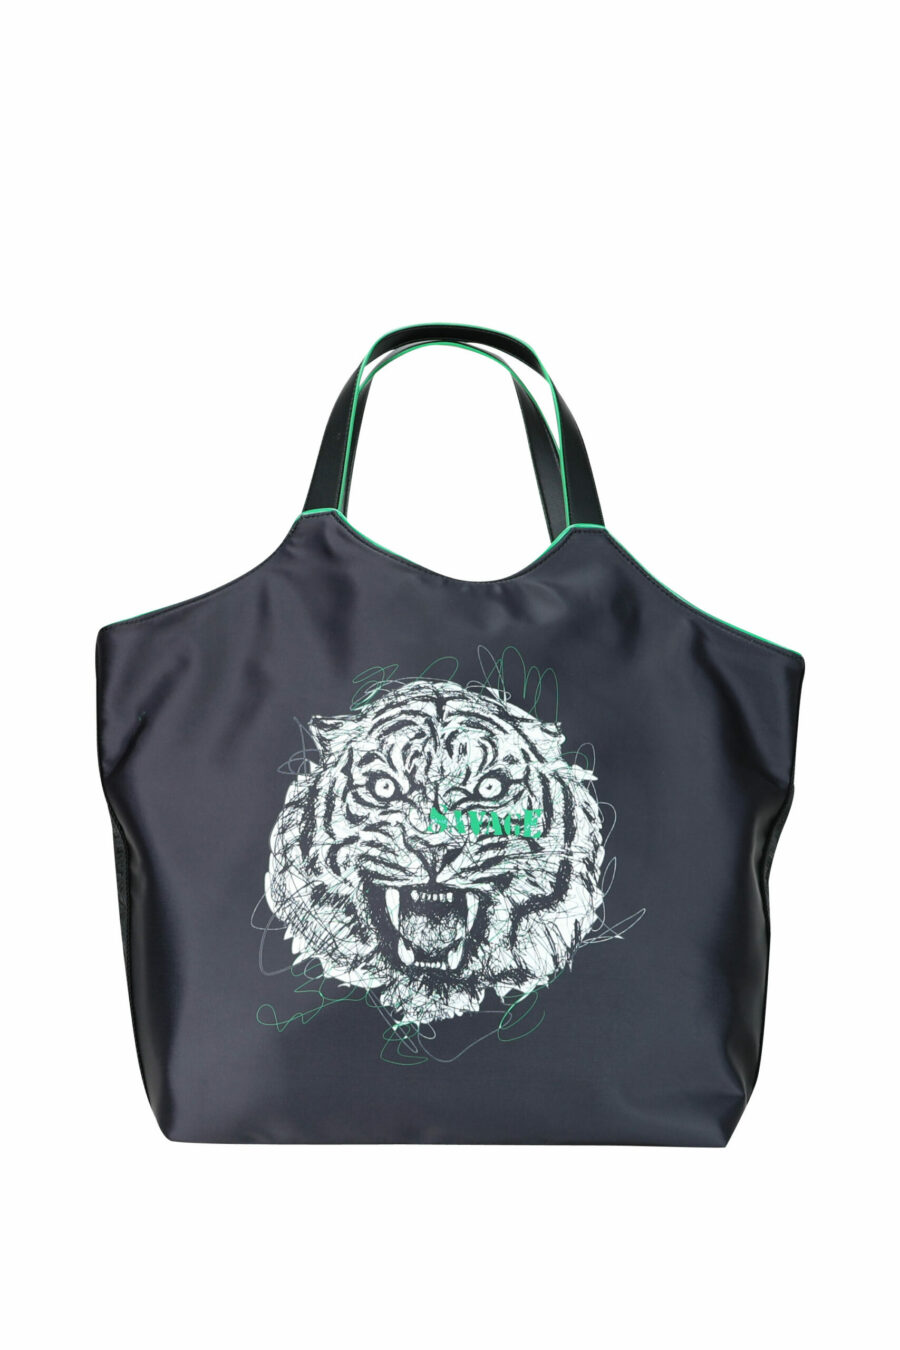 Tote bag negra con maxilogo tigre verde - 8052672642288 1 scaled